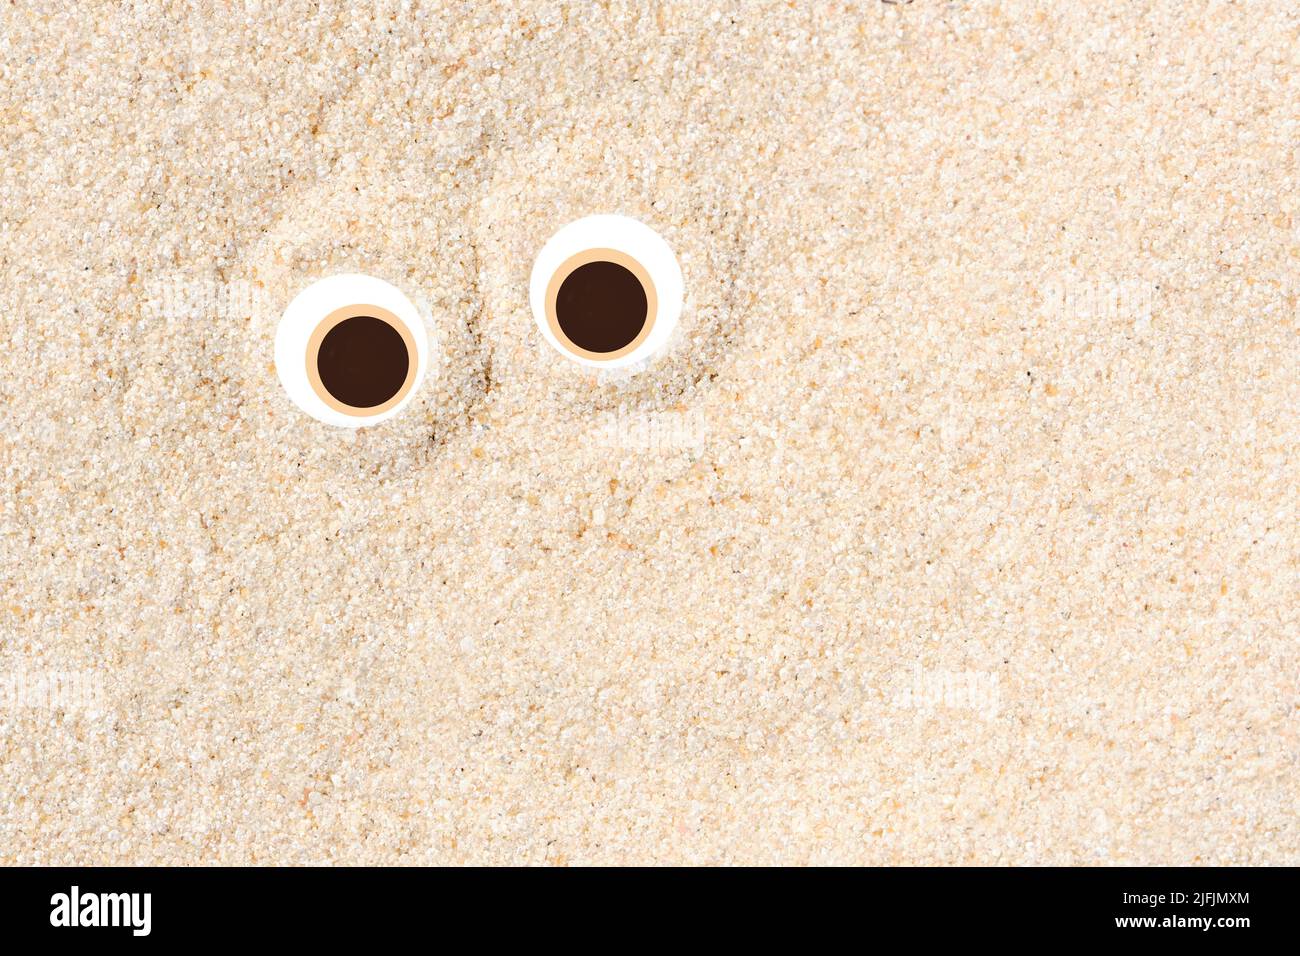 Fondo piatto minimalista creativo per il concetto estivo, un paio di caricature che fissano gli occhi sulla sabbia chiara sulla spiaggia. Design divertente con copia s. Foto Stock